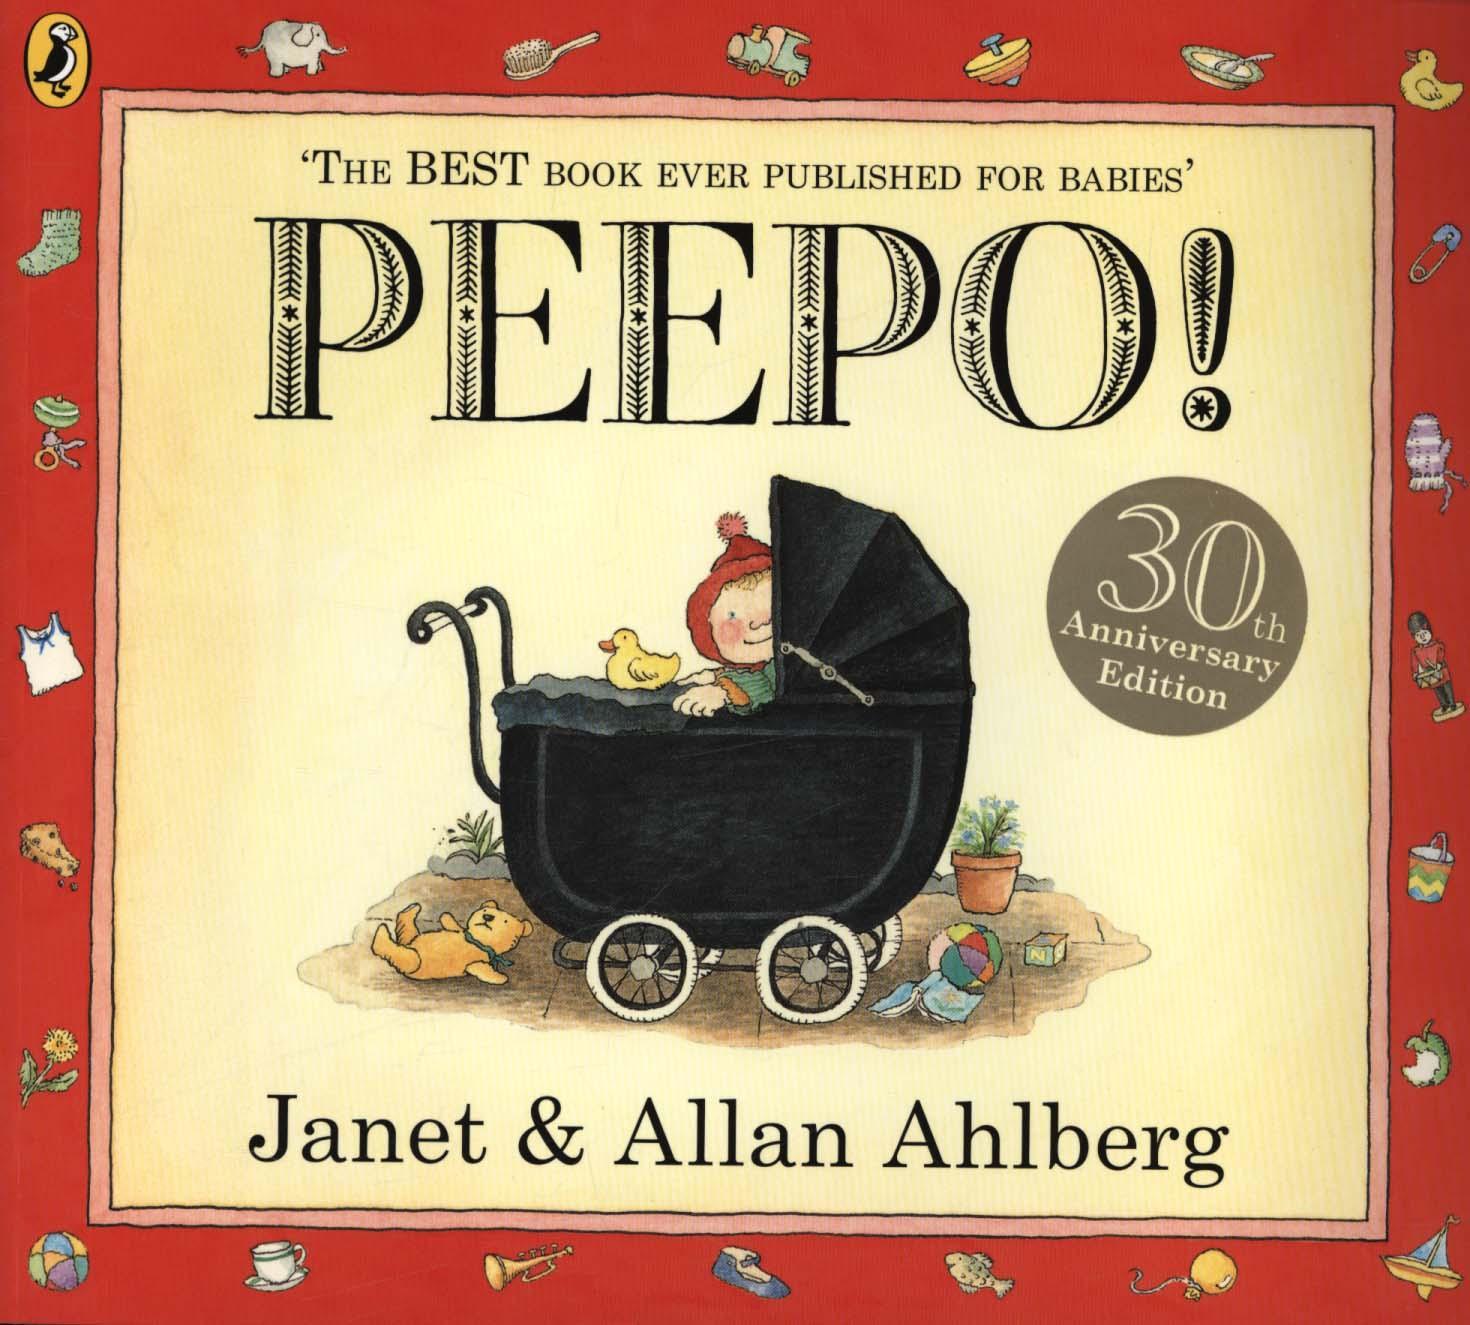 Peepo! - Janet Ahlberg